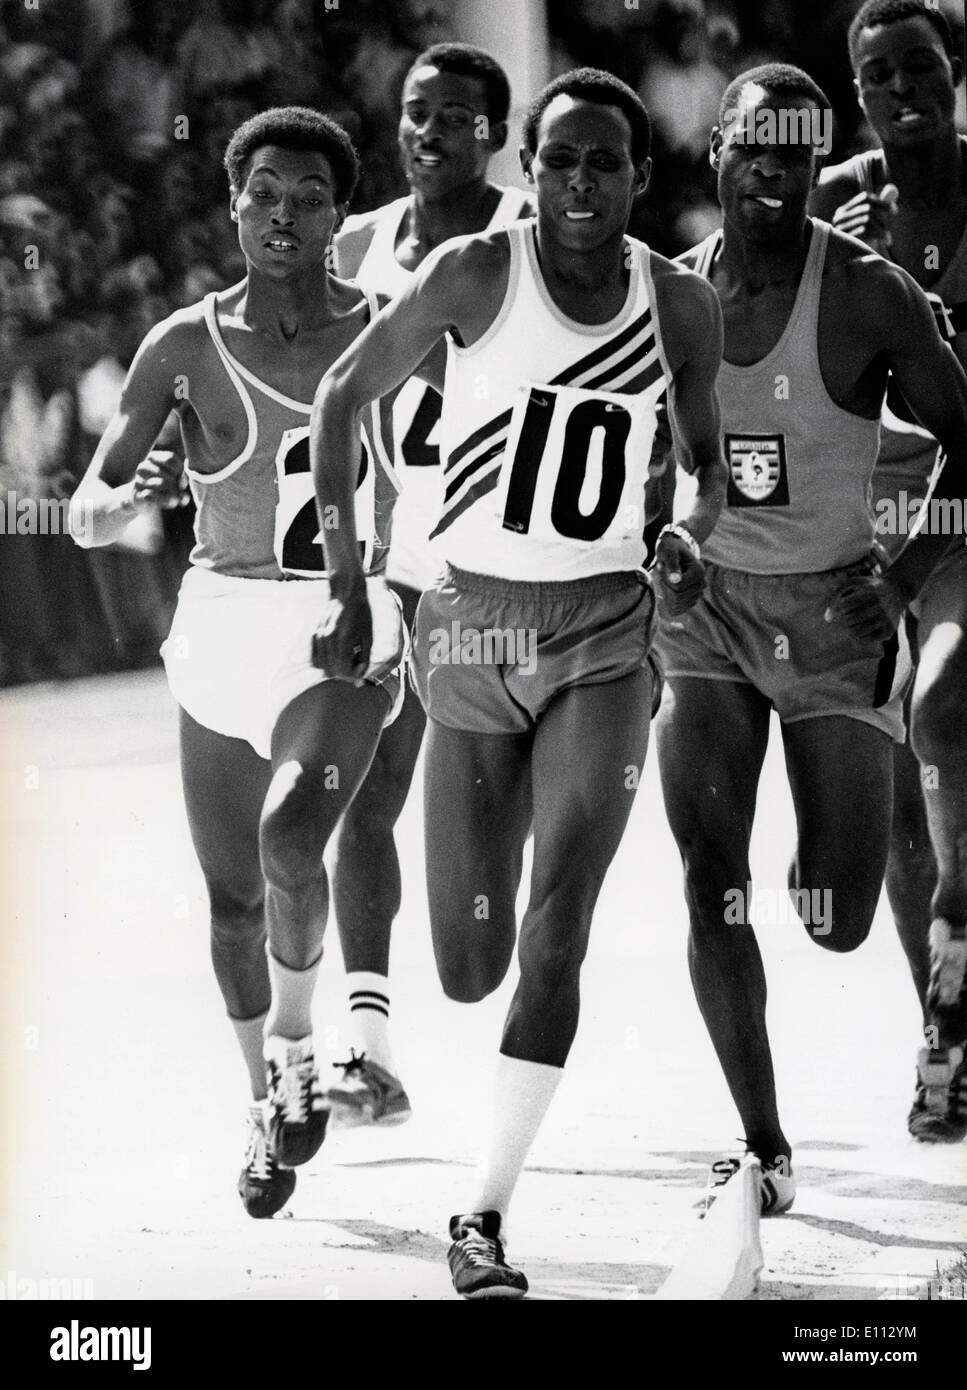 Atleta Filbert Bayi corriendo en una carrera Foto de stock